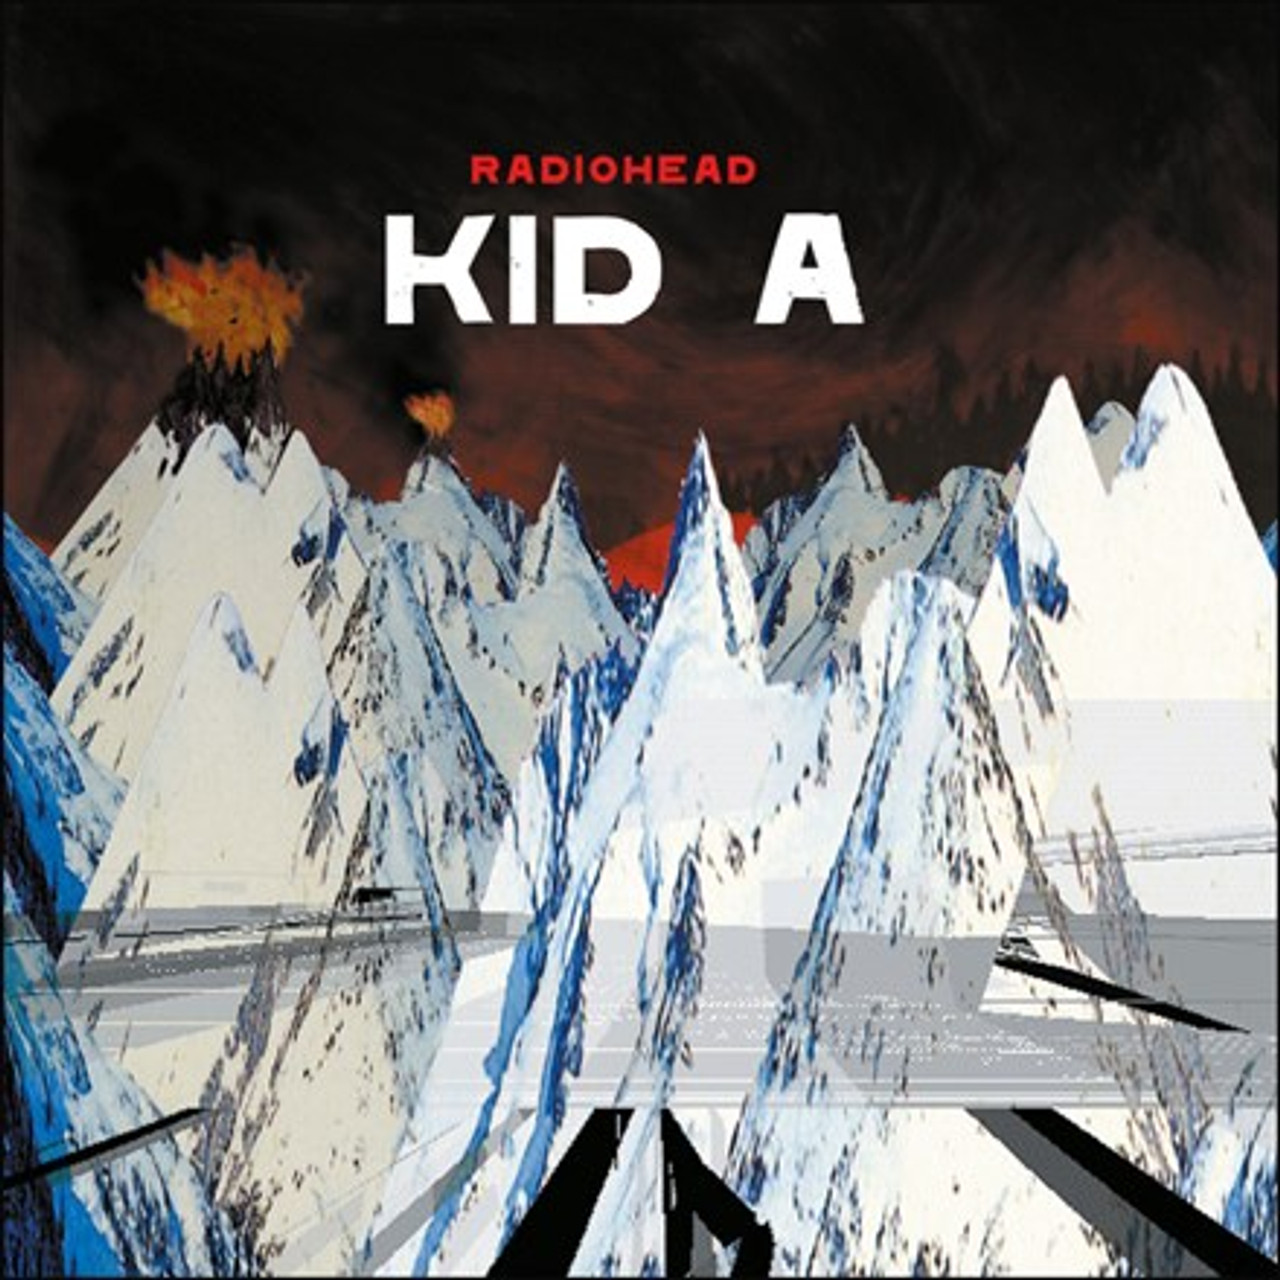 Radiohead - KID A カセットテープ レディオヘッド